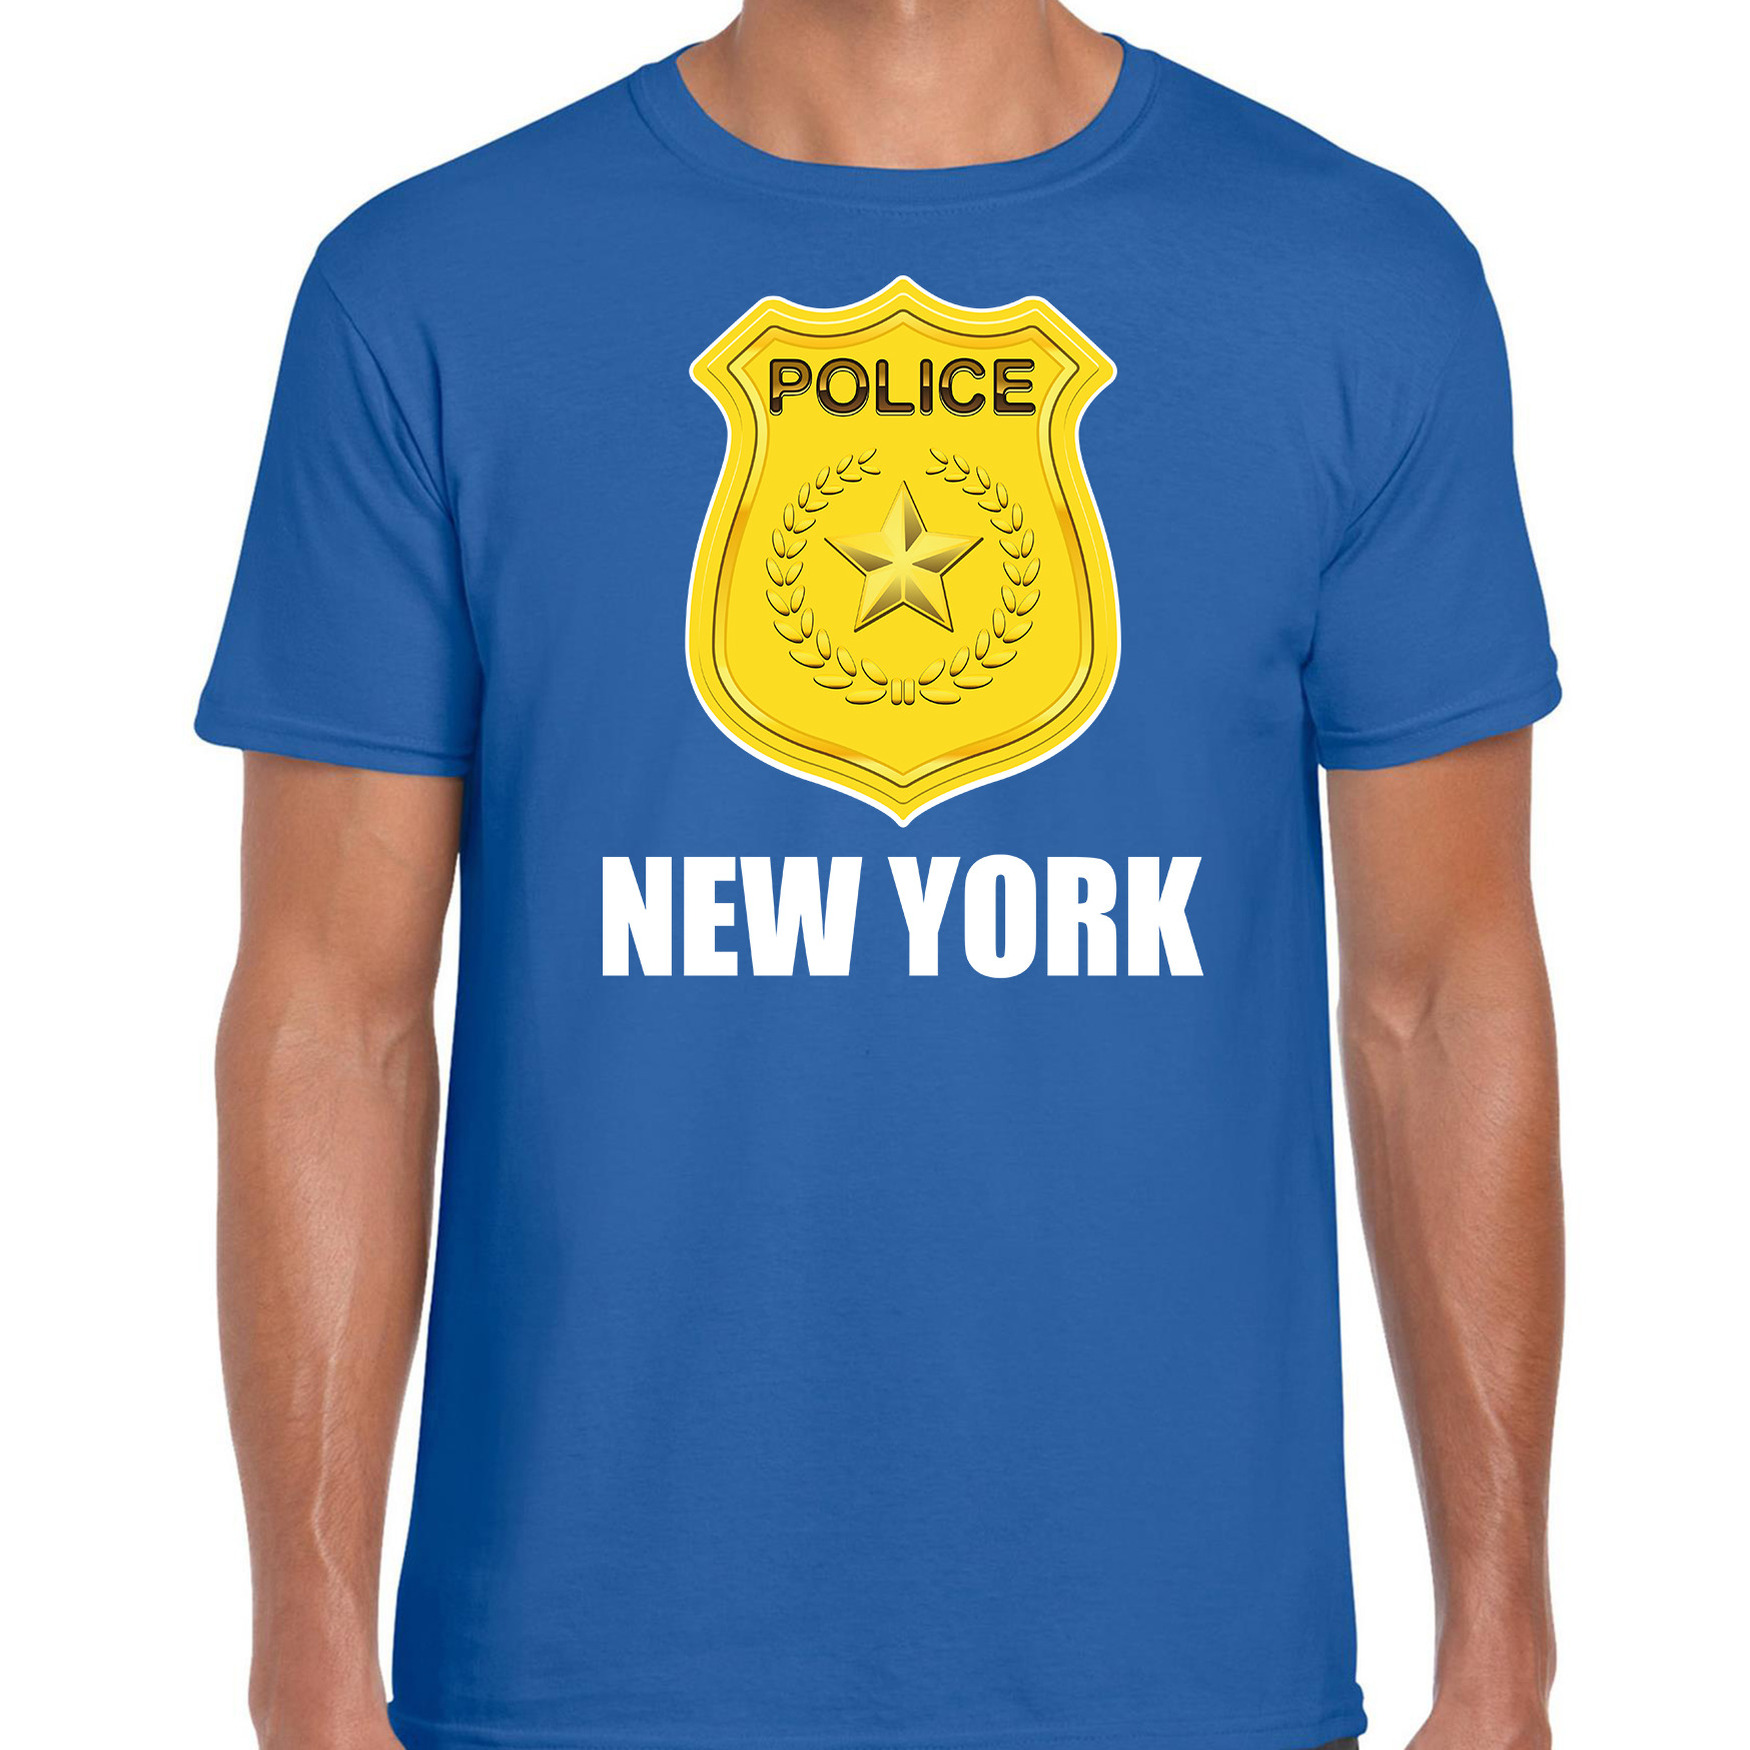 Police-politie embleem New York verkleed t-shirt blauw voor heren